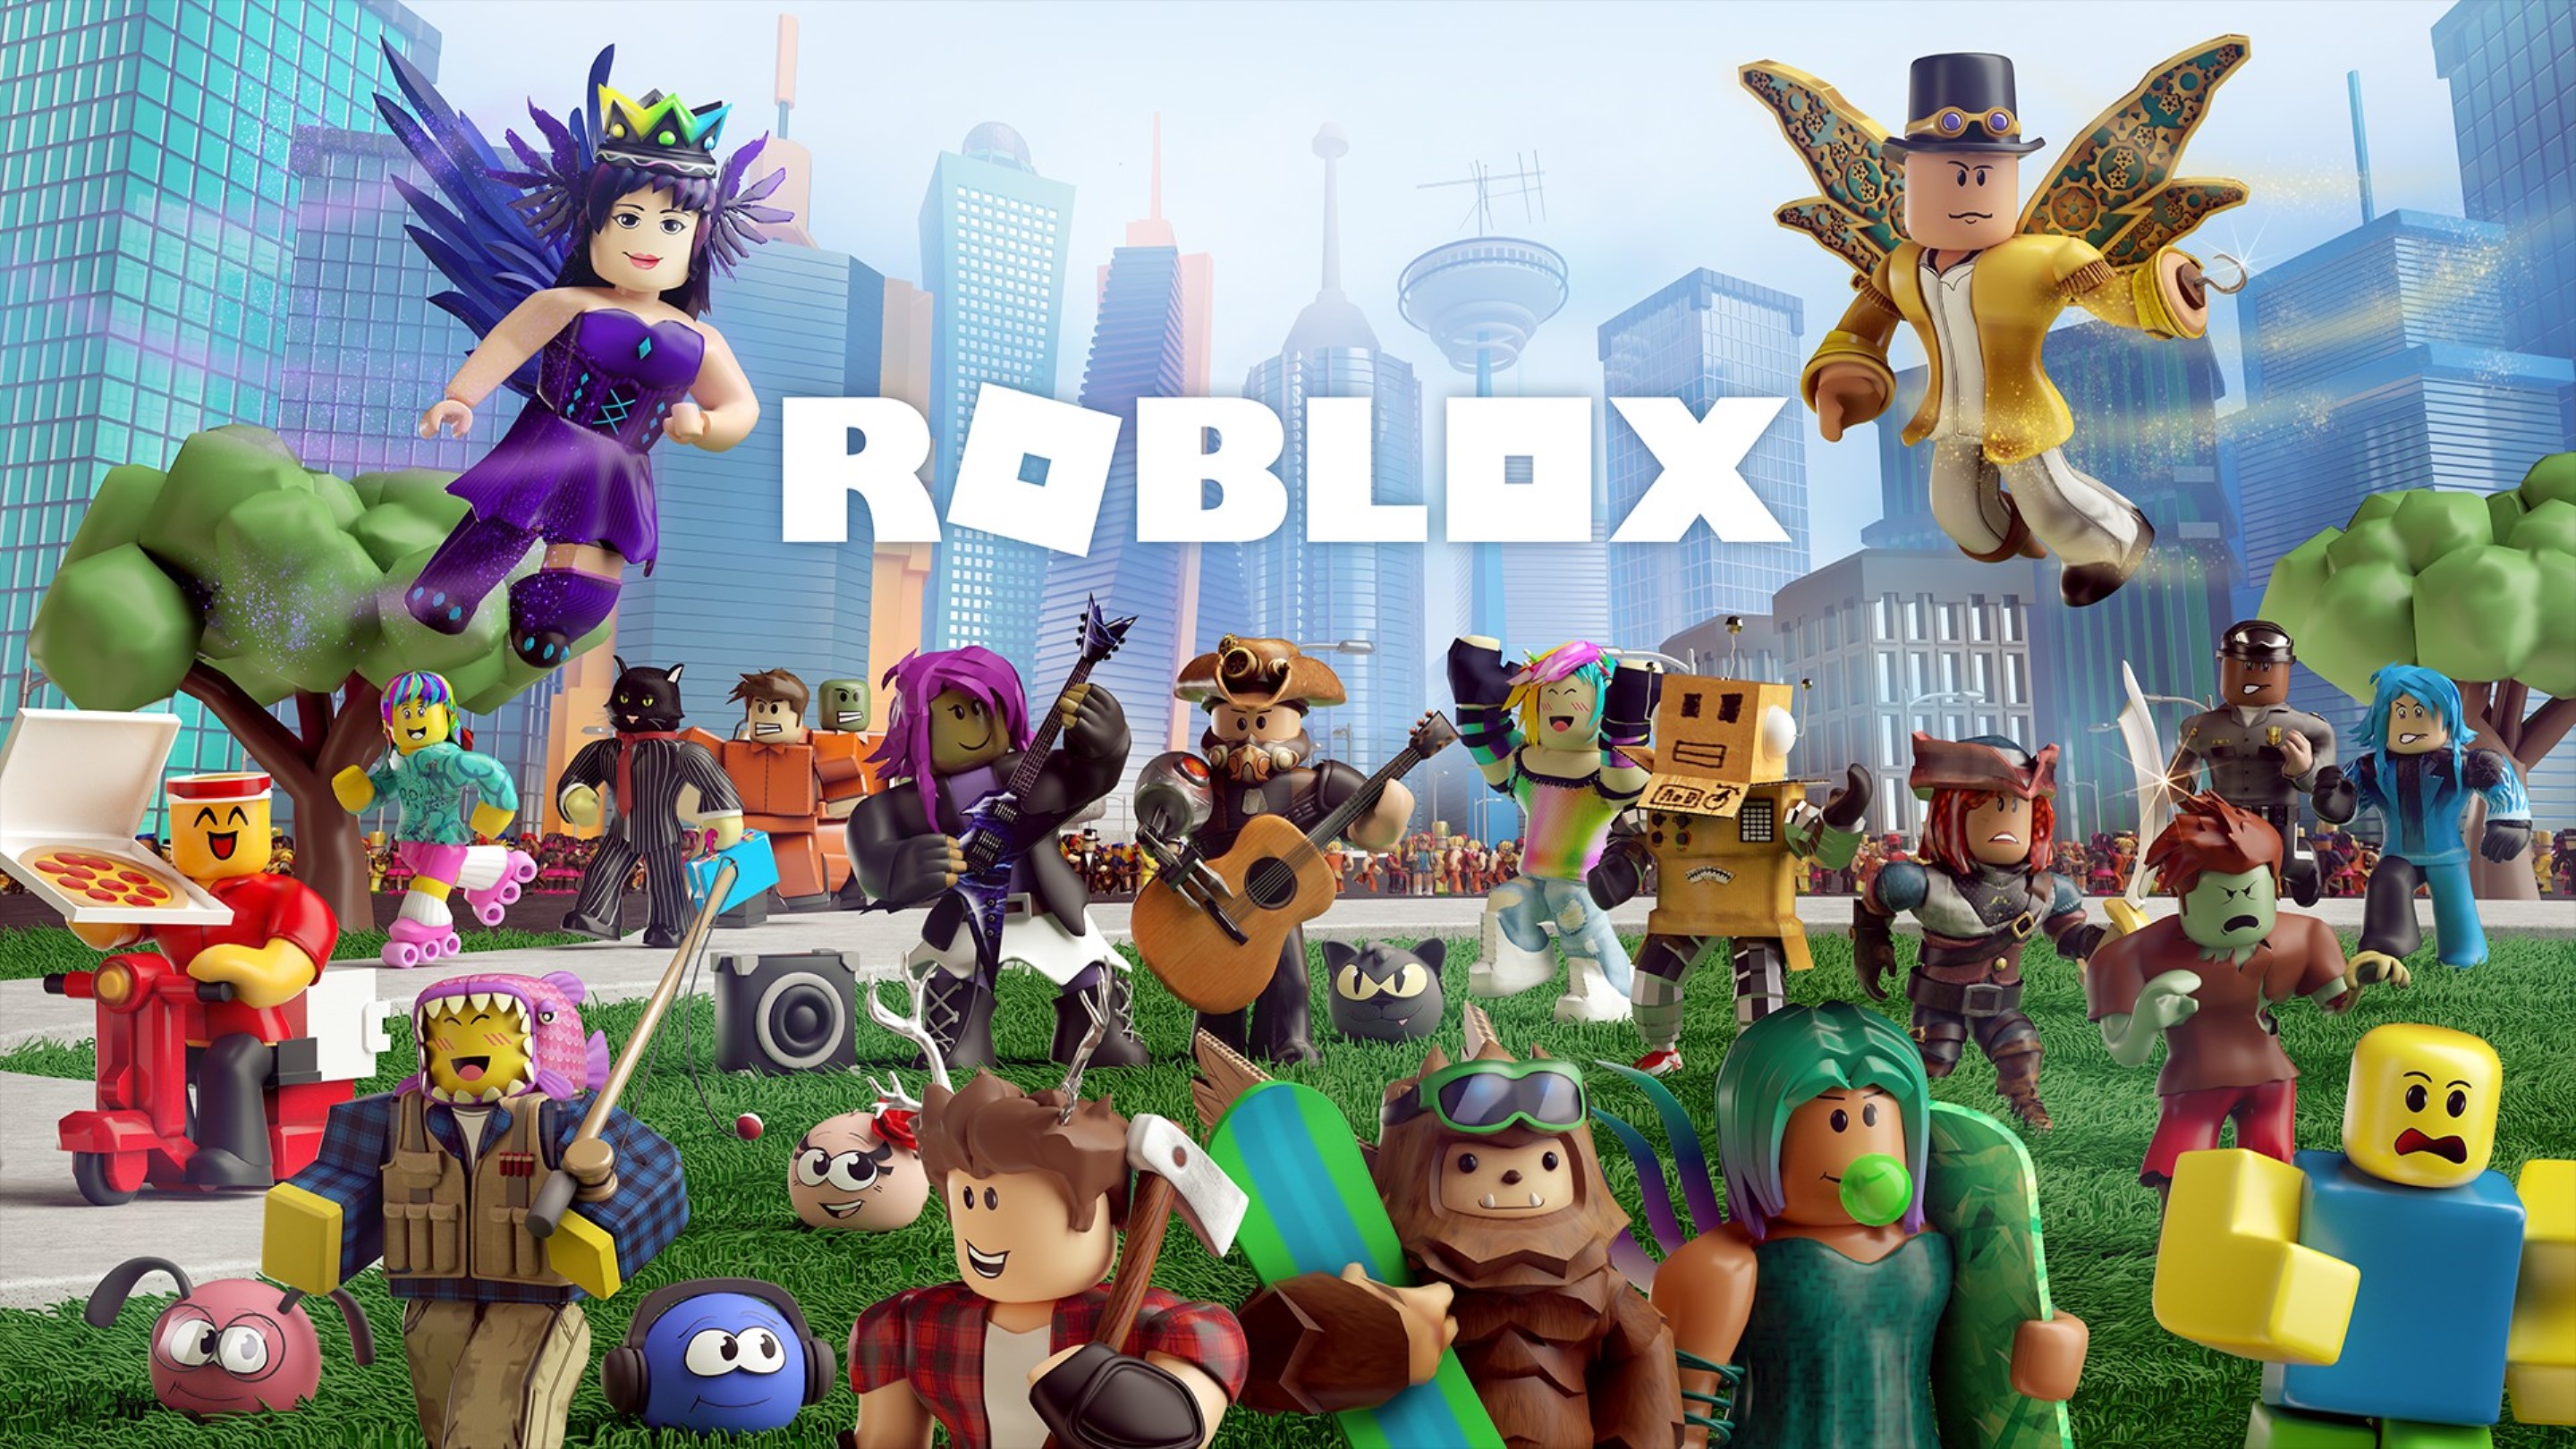 Guía completa del videojuego Roblox para madres y padres